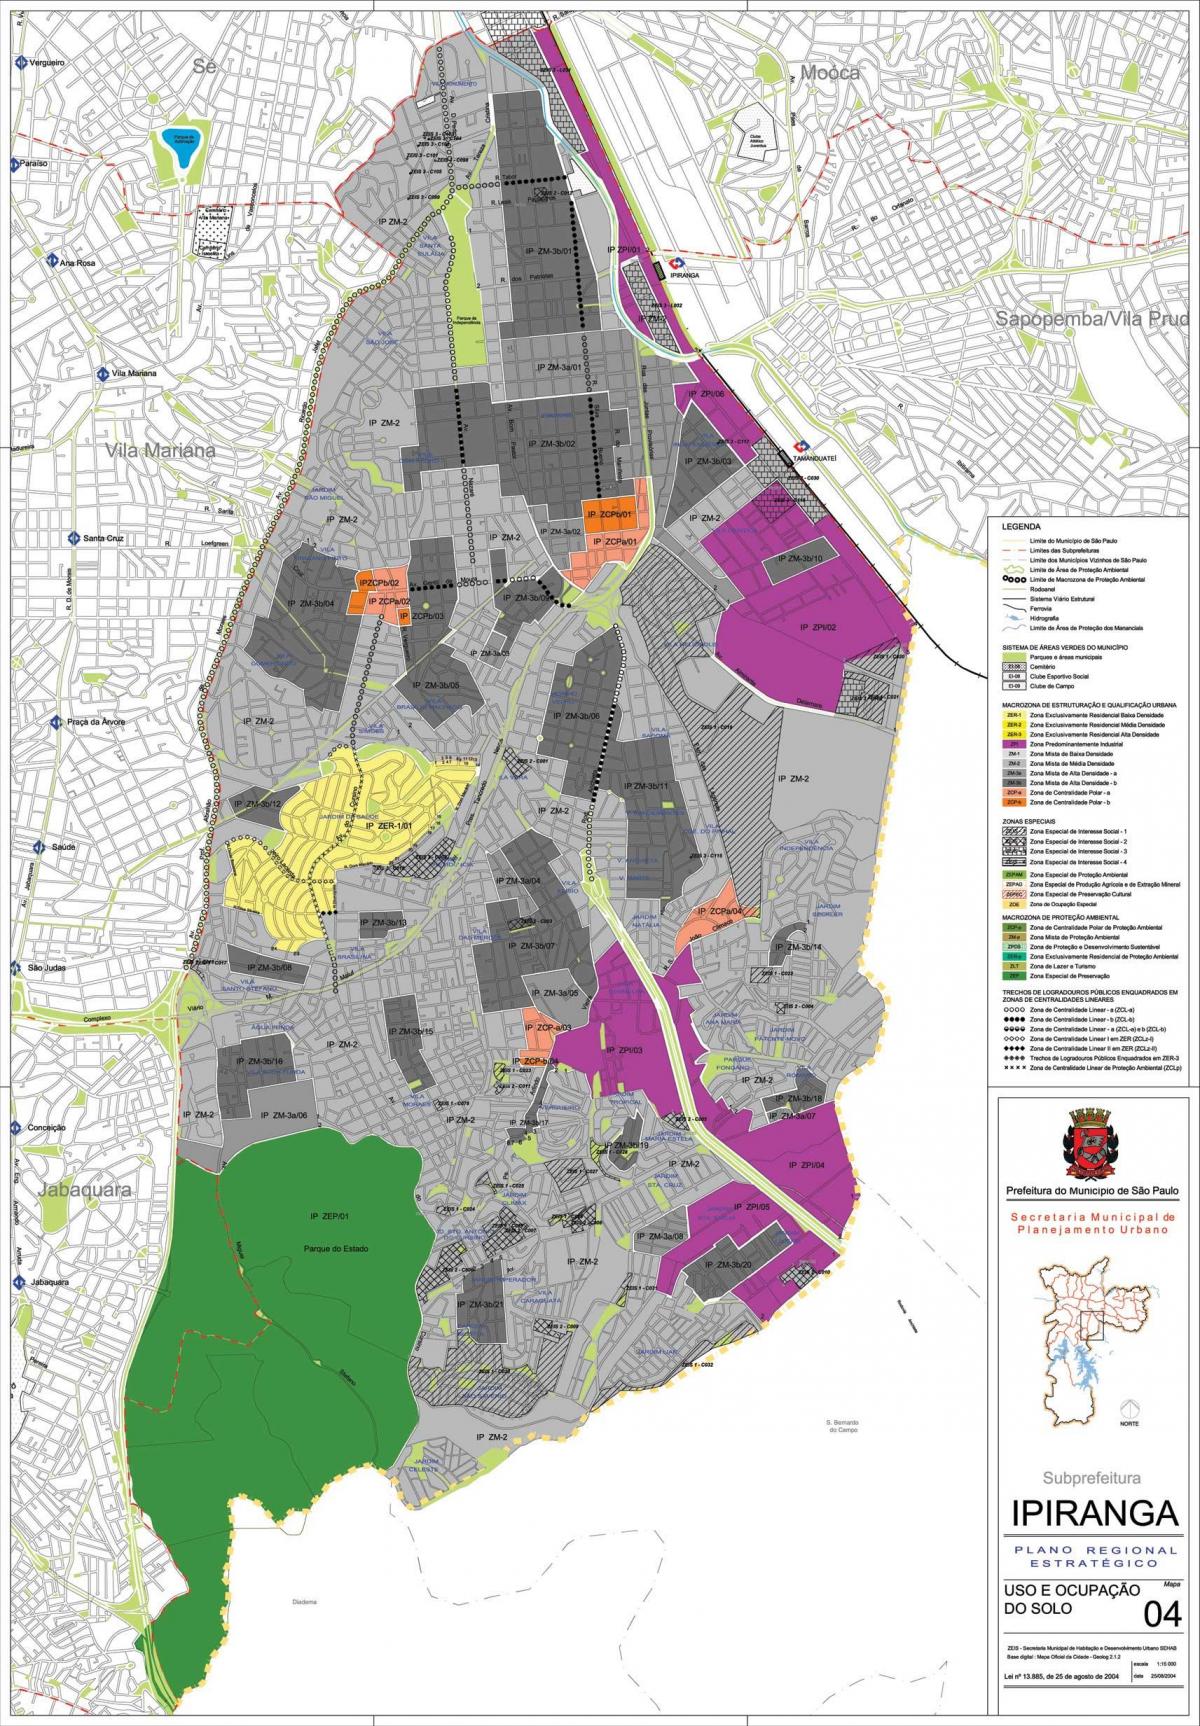 નકશો Ipiranga સાઓ પાઉલો - વ્યવસાય જમીન